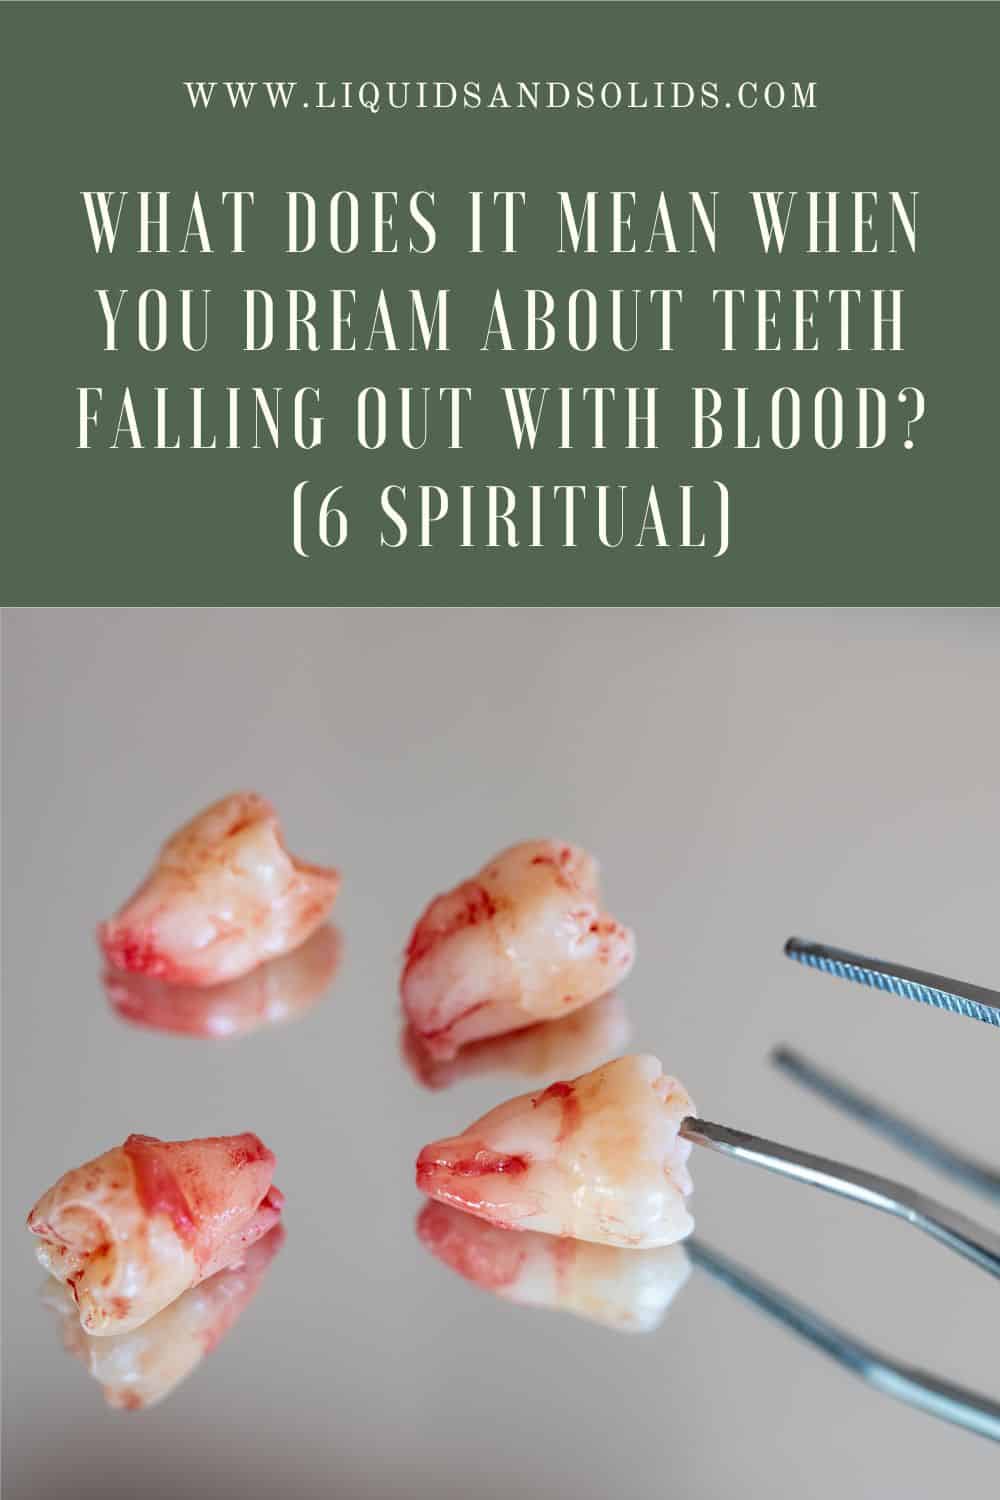  تحلم بتساقط الأسنان بالدم؟ (6 معاني روحية)